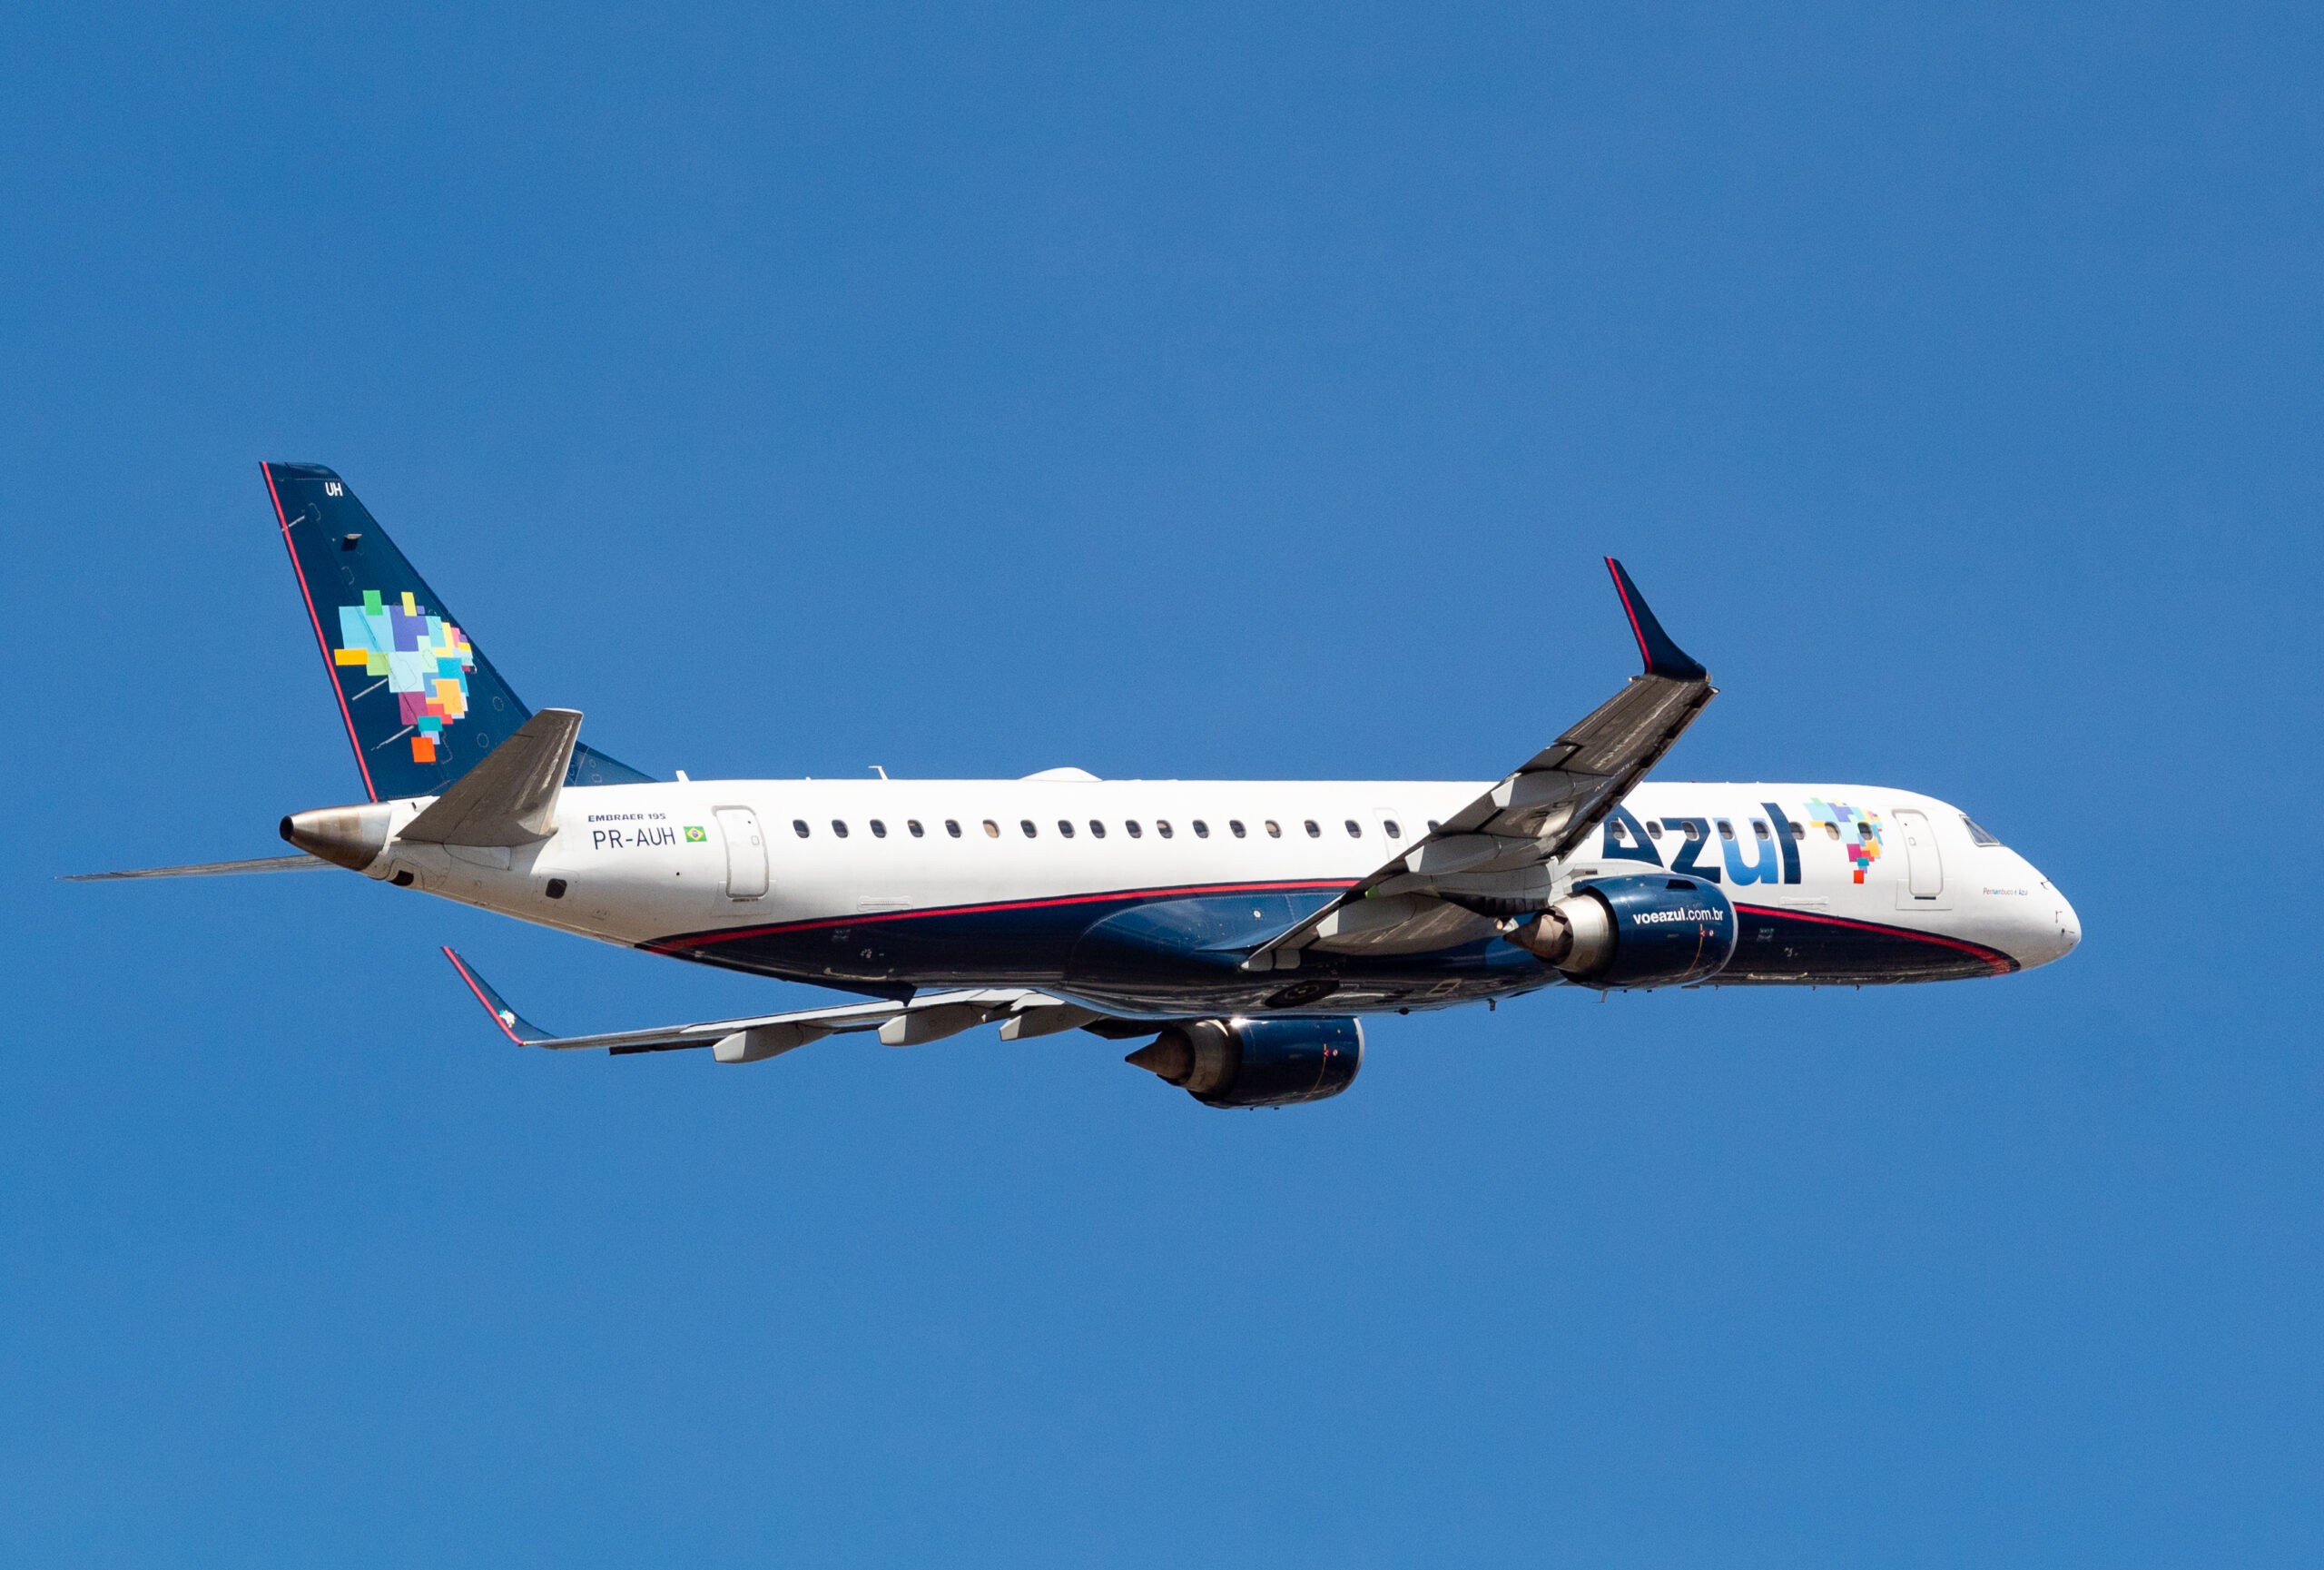 PR-AUH – Embraer 195 – Azul Linhas Aéreas - Blog do Spotter